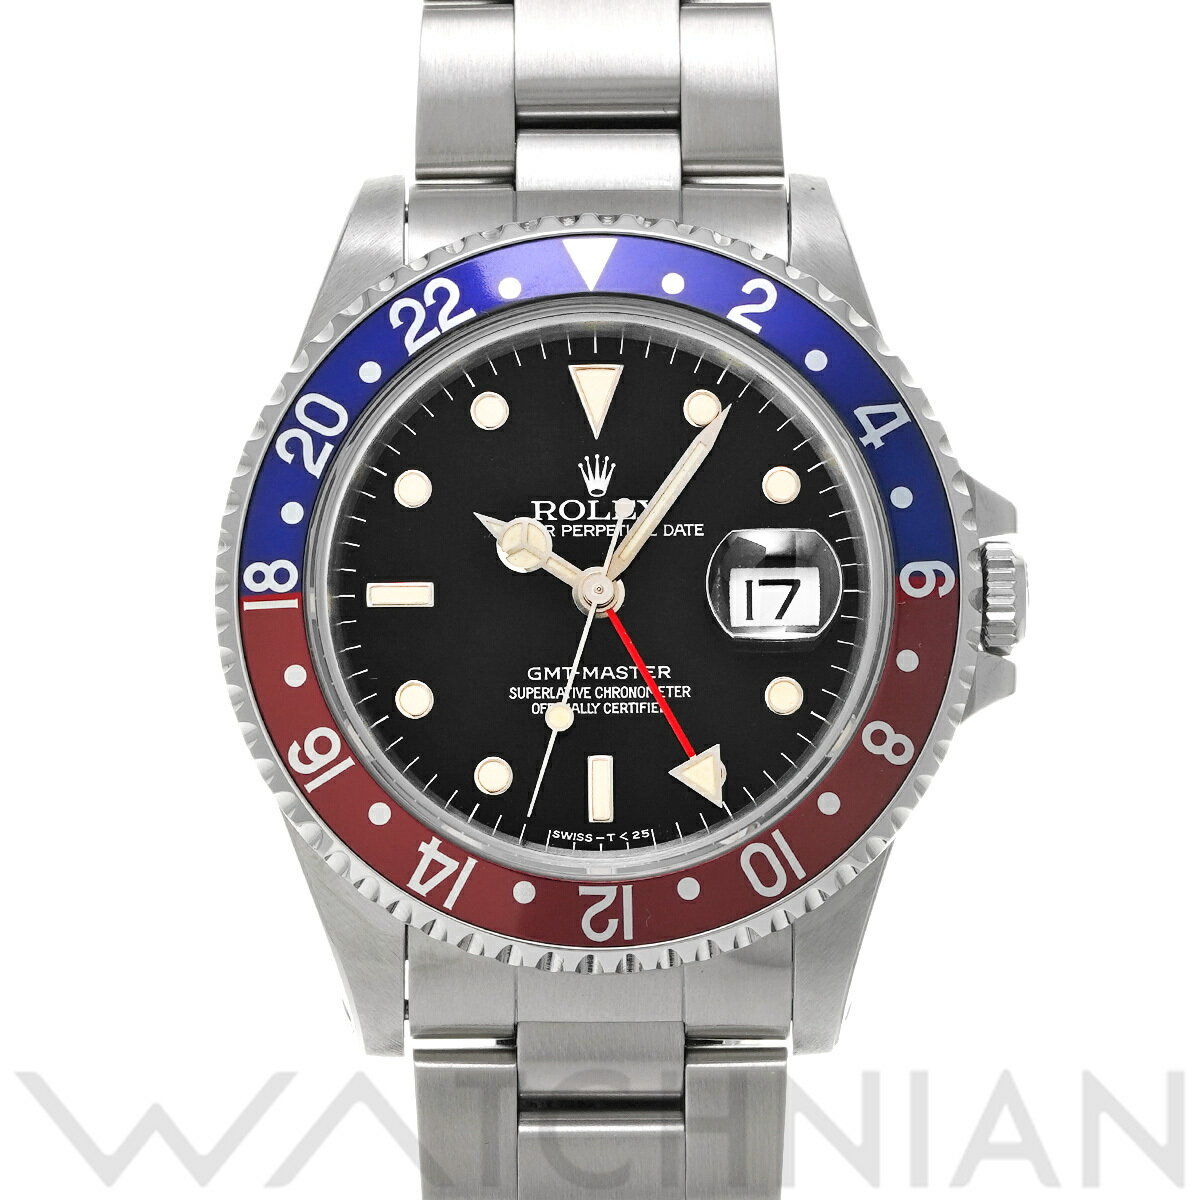 【4種選べるクーポン】【ローン60回払い無金利】【中古】 ロレックス ROLEX GMTマスター 16700 X番(1991年頃製造) ブラック メンズ 腕時計 ロレックス 時計 高級腕時計 ブランド